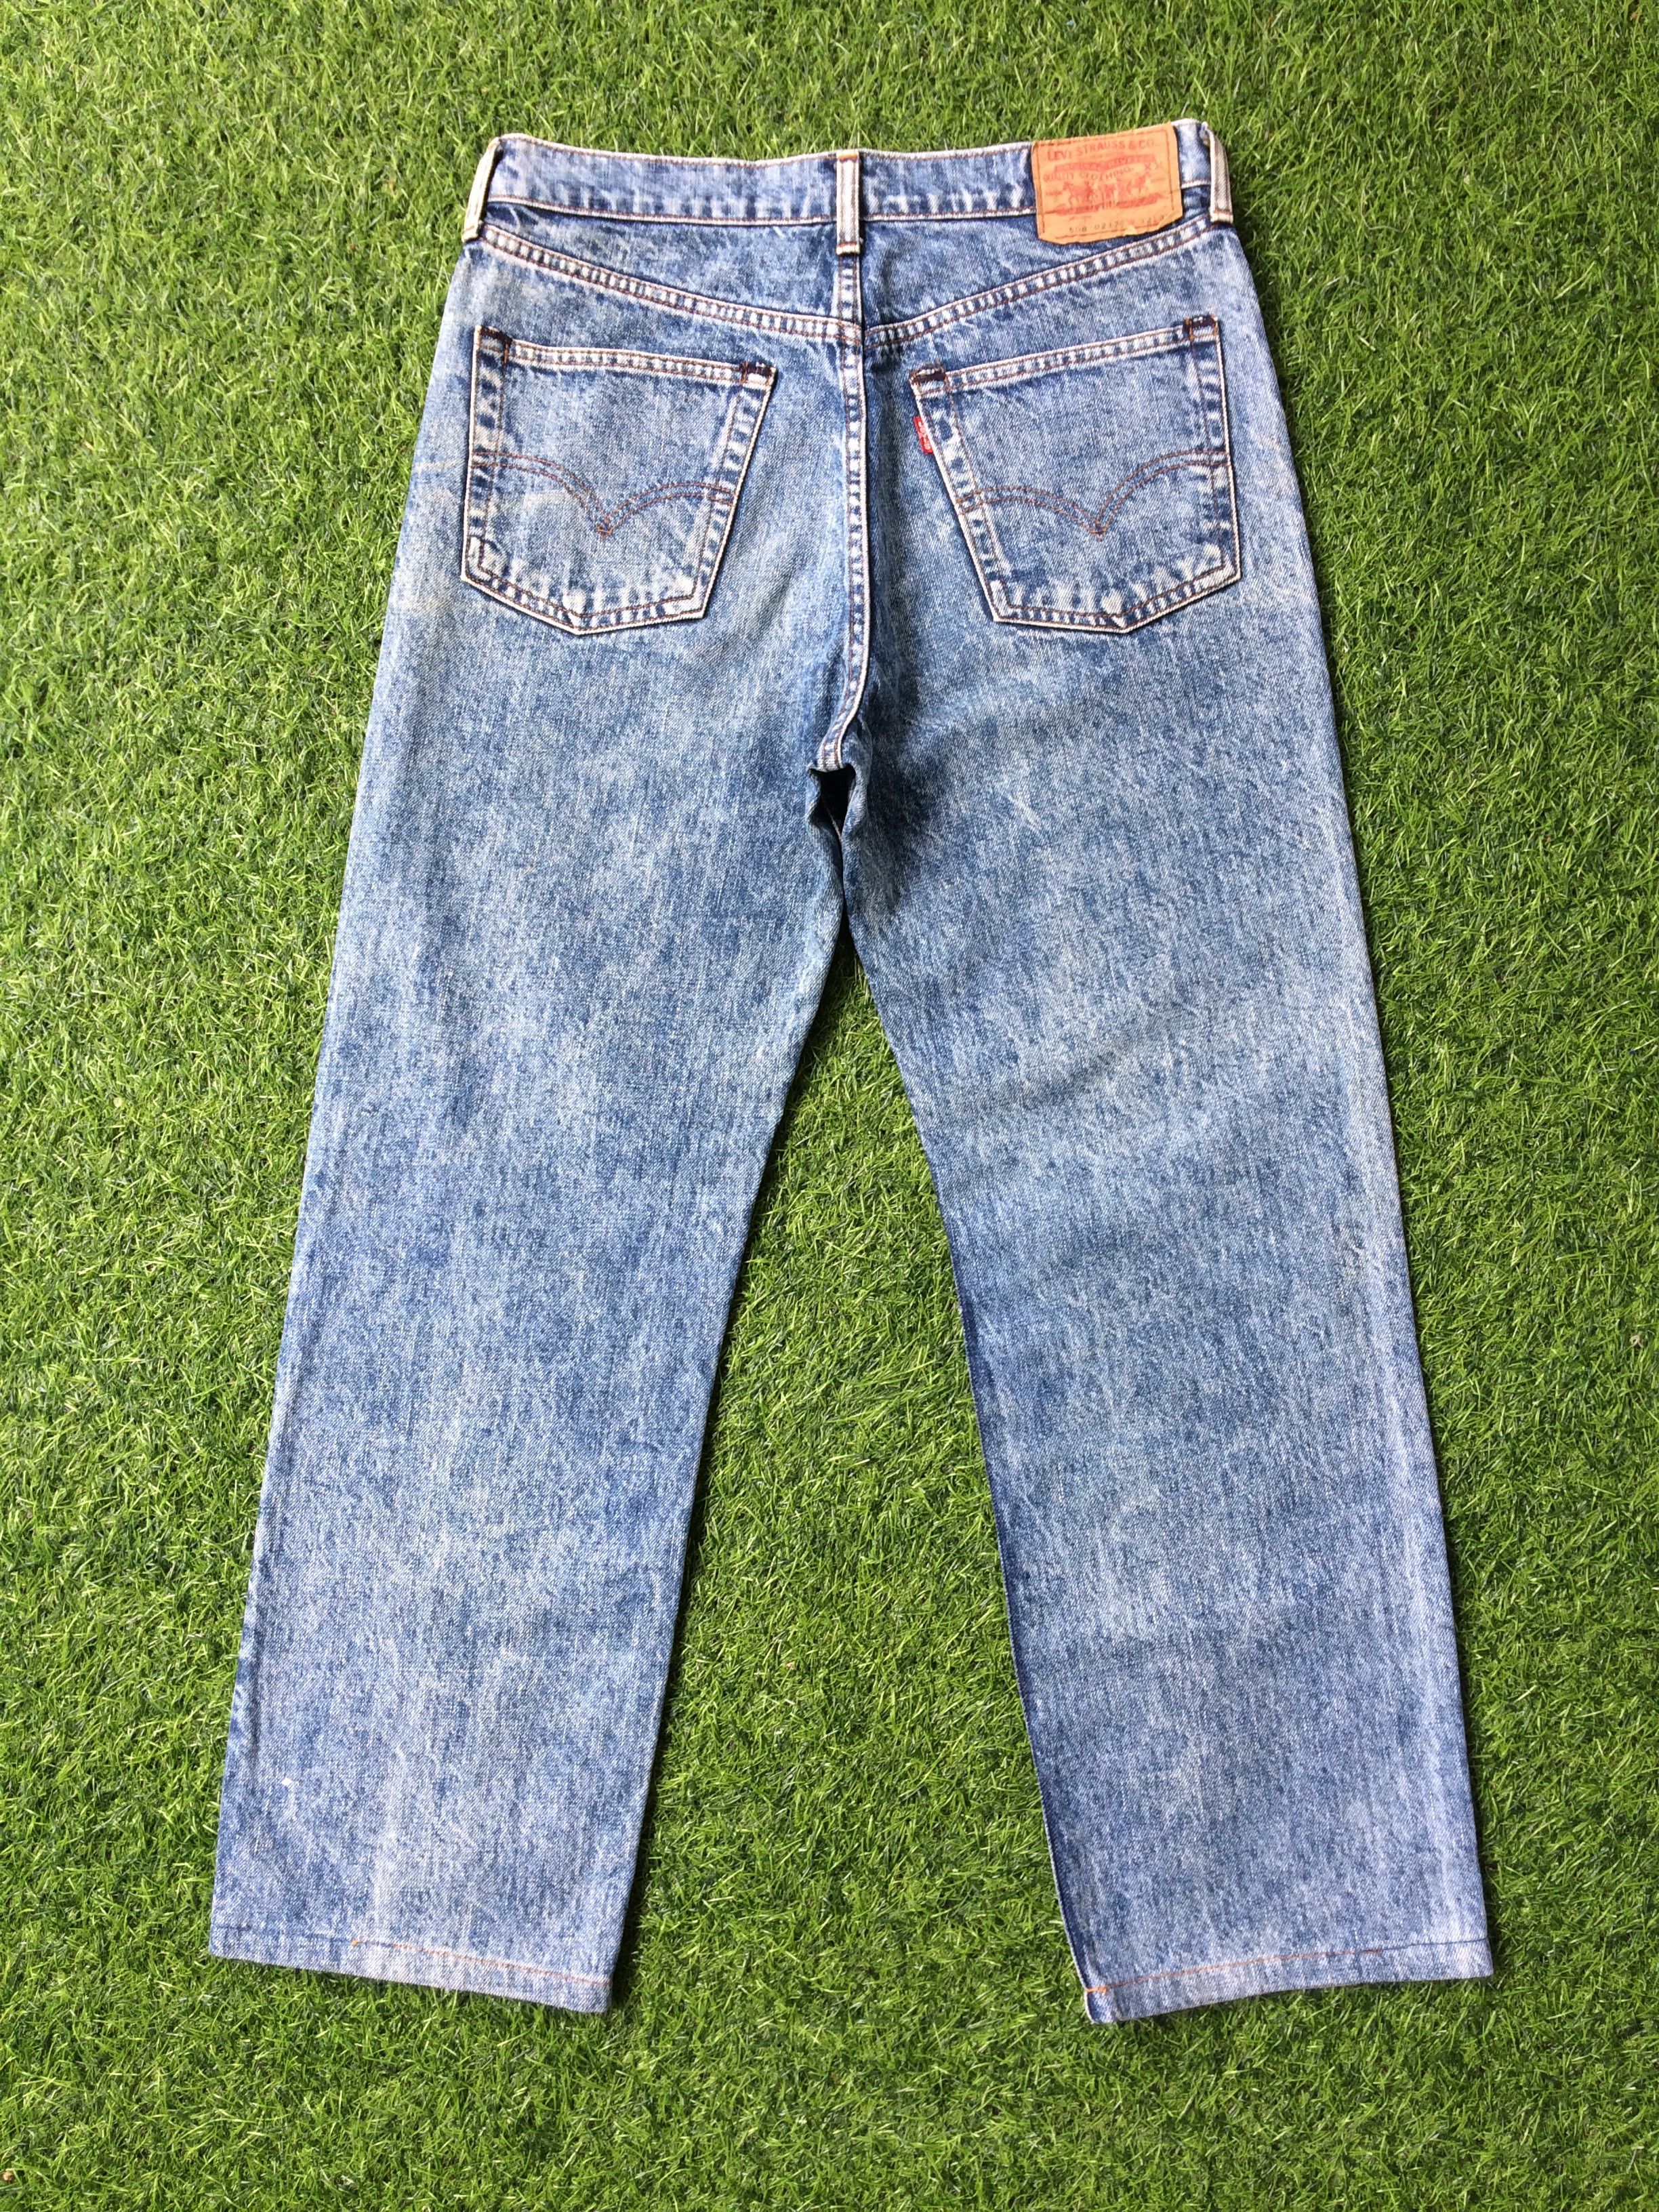 Vintage Distressed Levis 508 Acid Wash Jeans #B-495 Size US 30 / EU 46 - 2 Preview